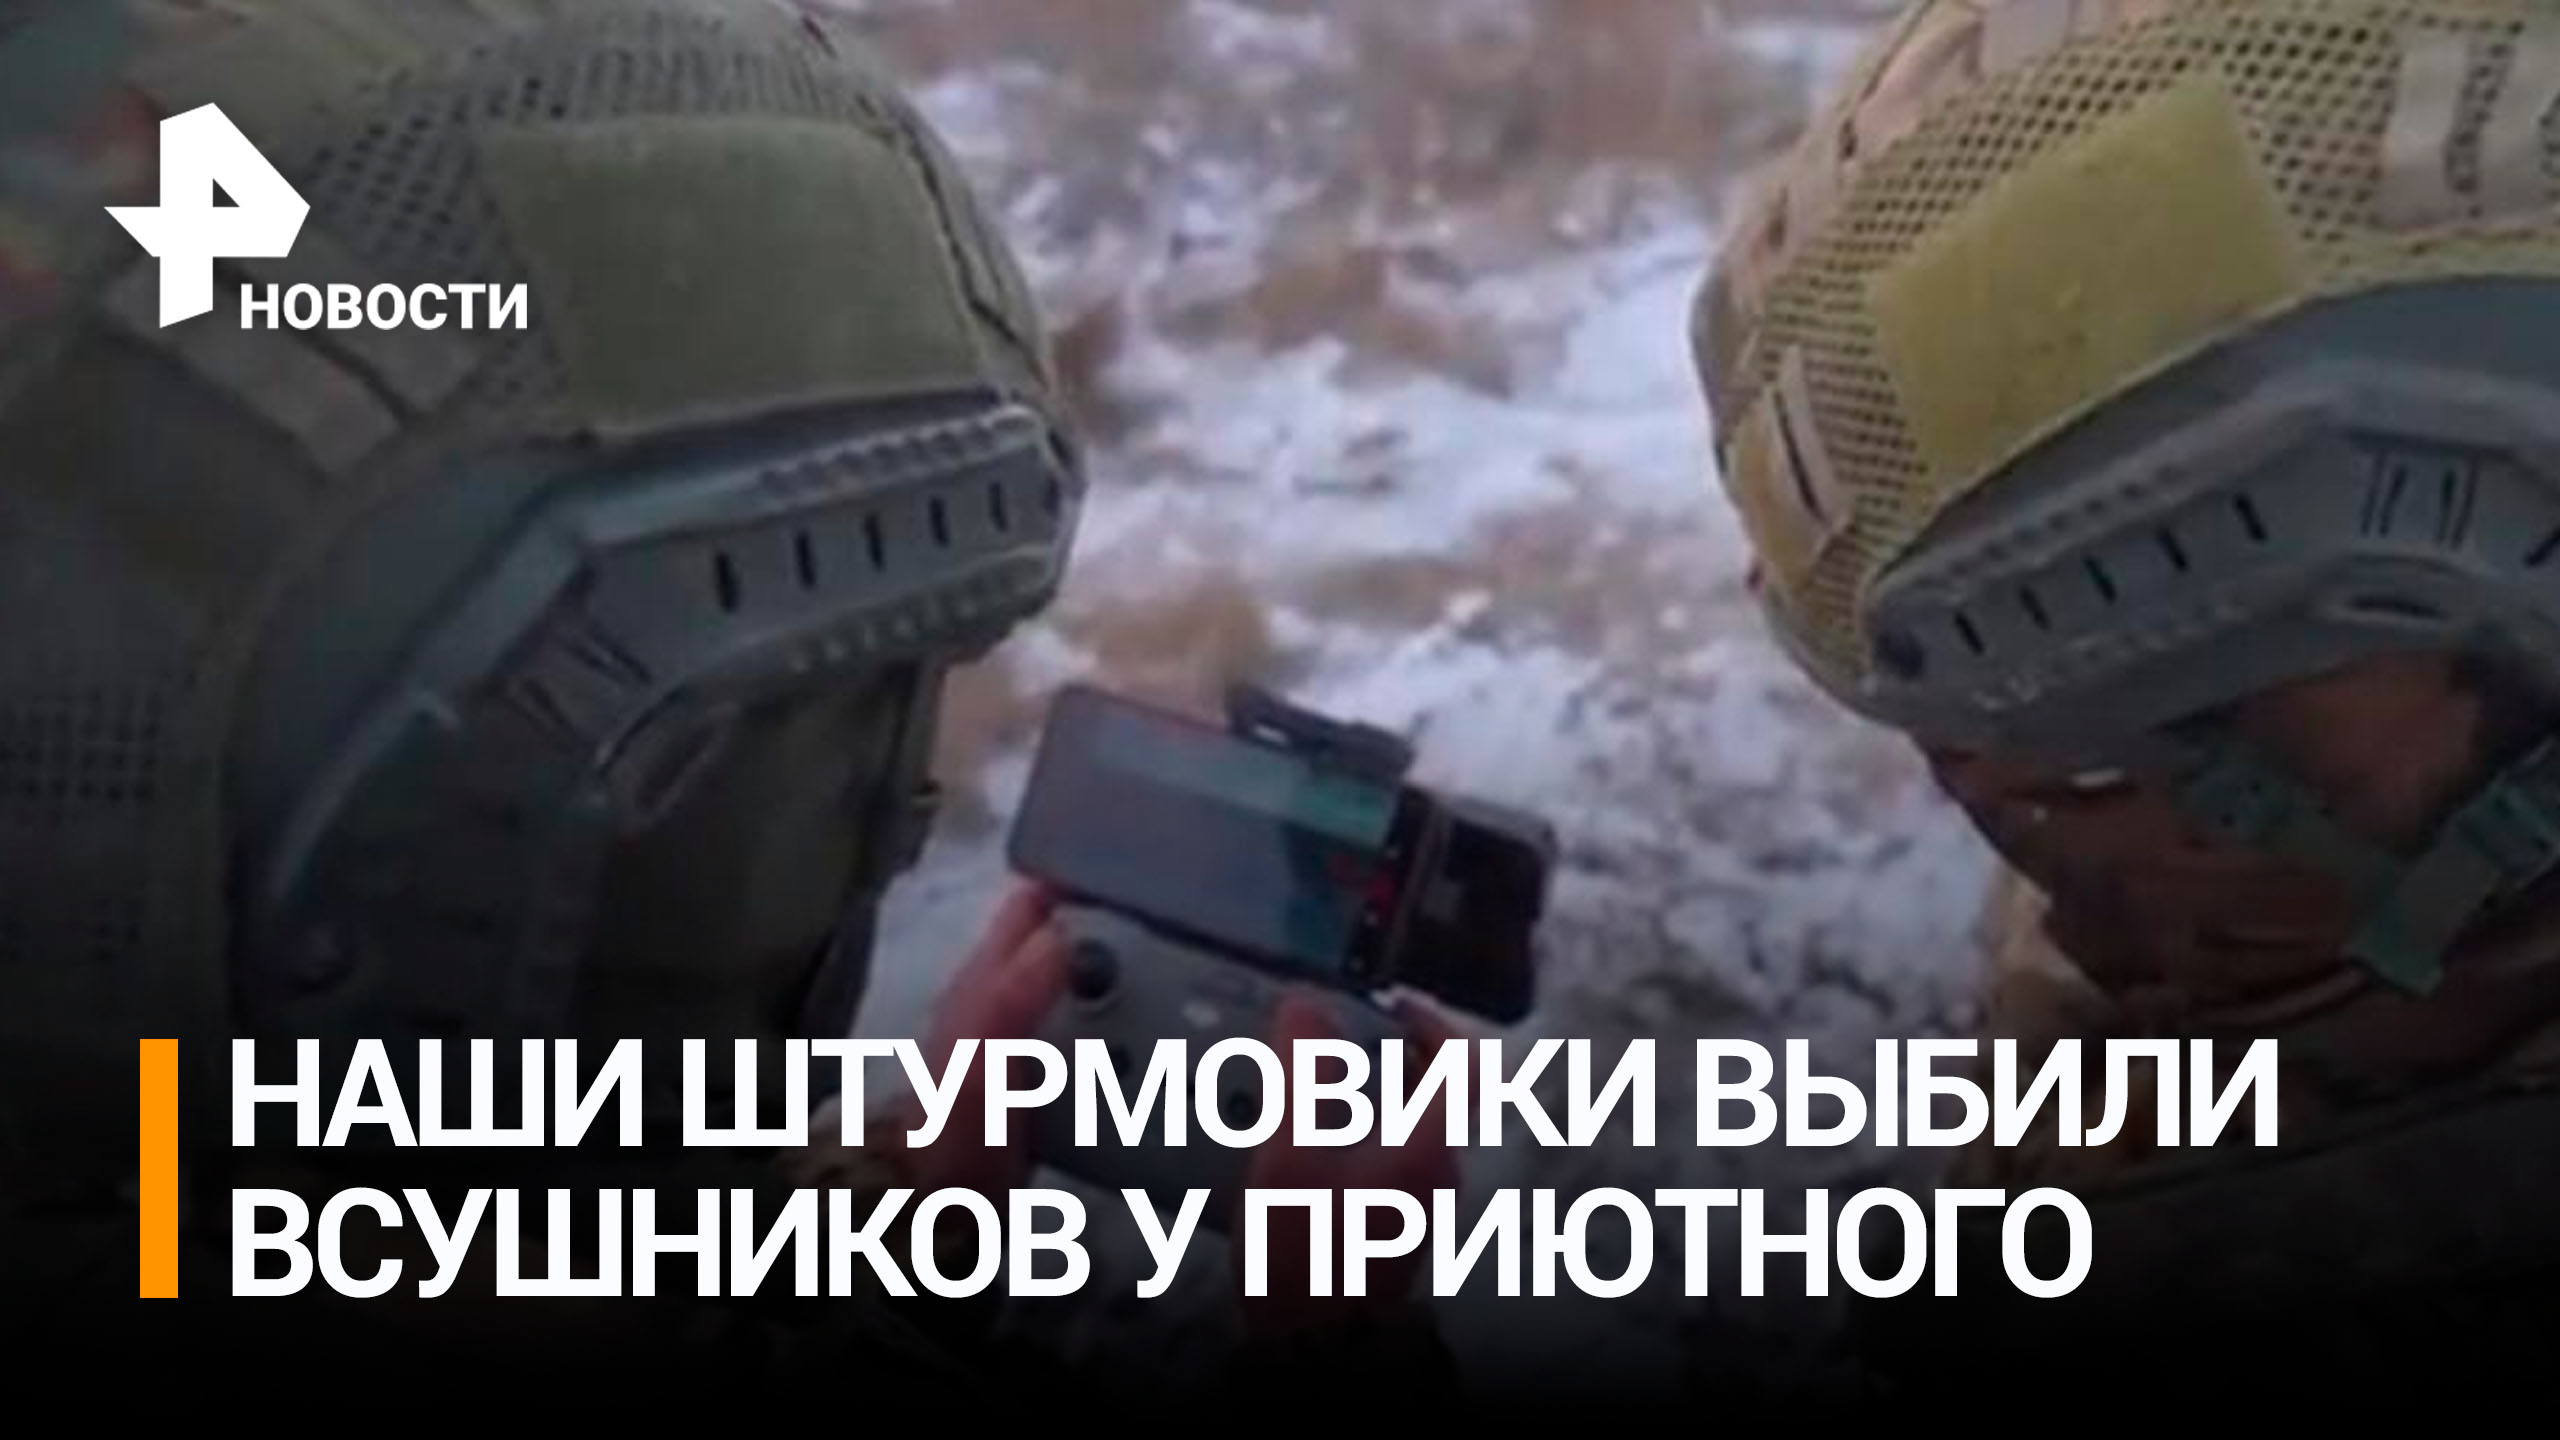 Российские военные уничтожили вражеский взвод в окрестностях Приютного / РЕН Новости